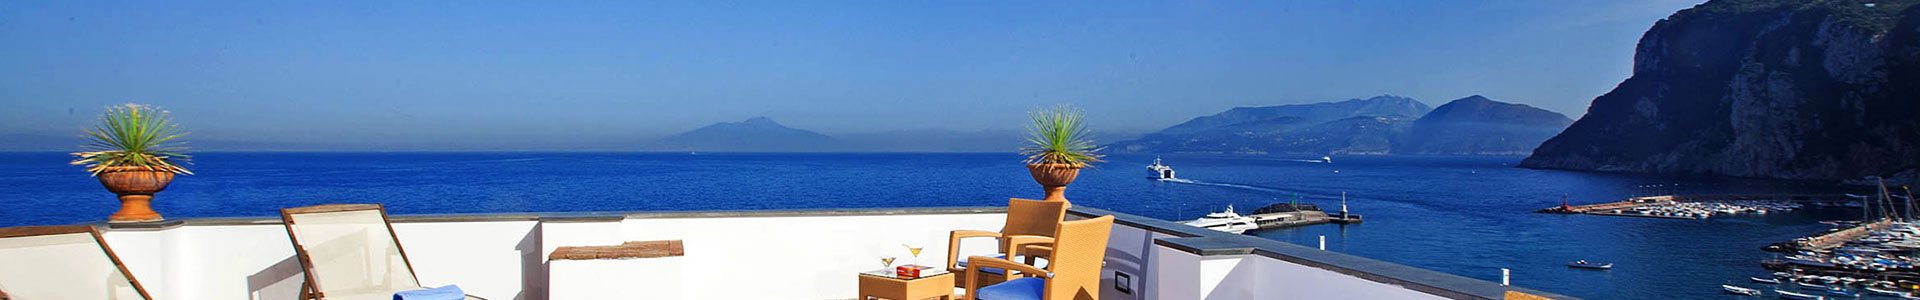 Hotel Relais Maresca auf Capri